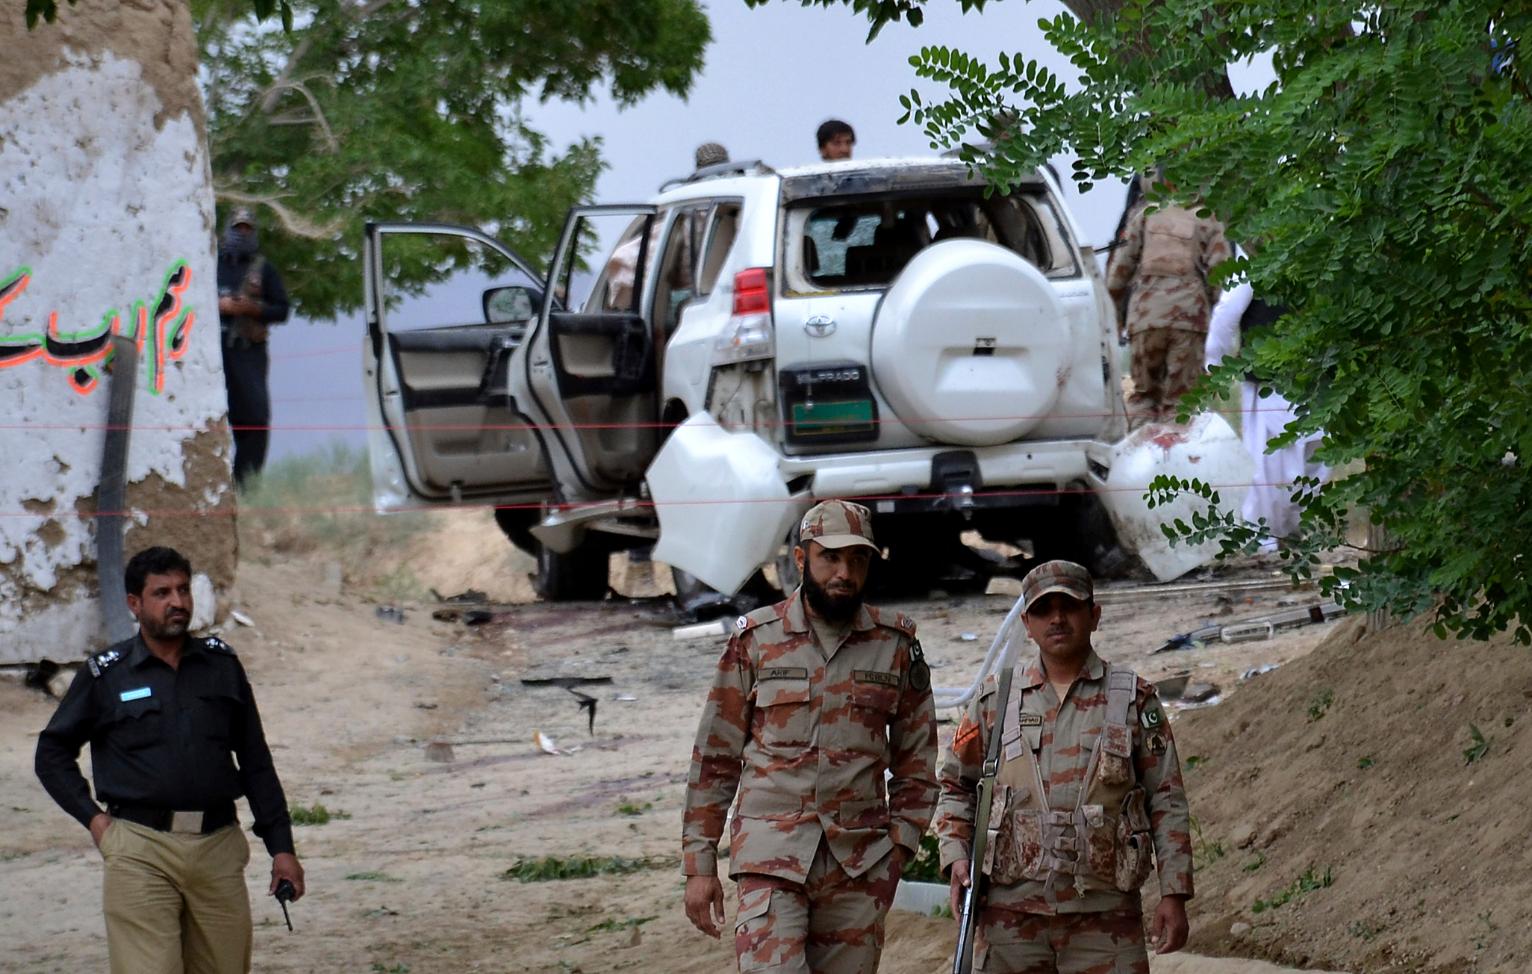   مصر تدين بشدة الهجوم الإرهابي في ولاية بلوشستان الباكستانية